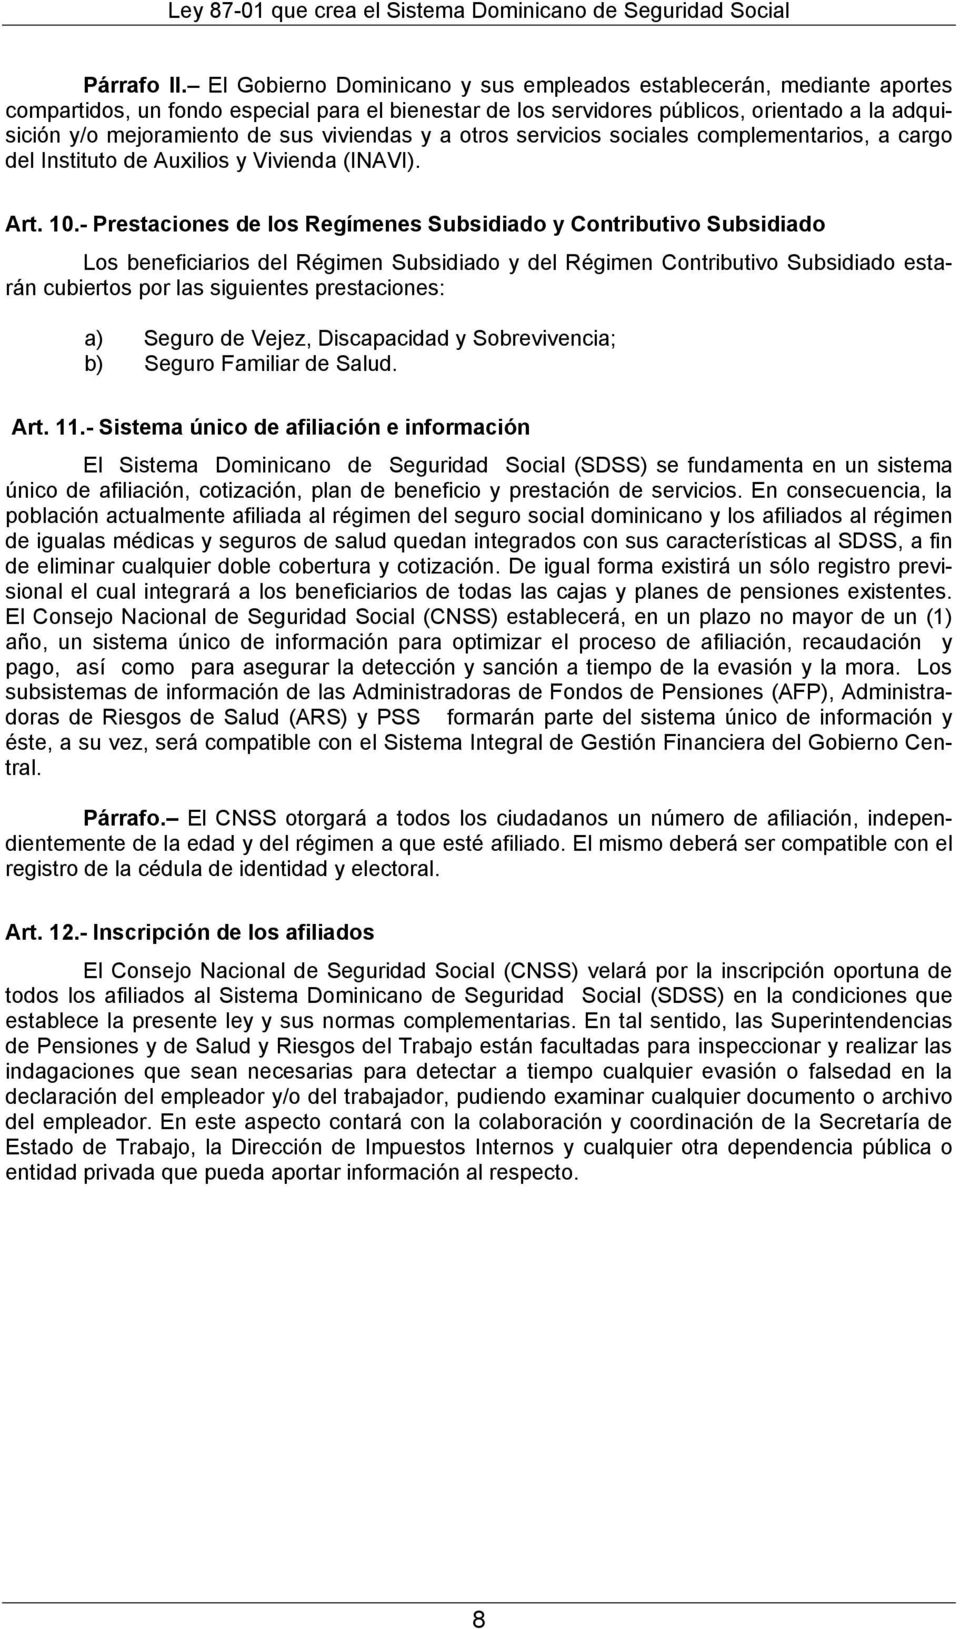 viviendas y a otros servicios sociales complementarios, a cargo del Instituto de Auxilios y Vivienda (INAVI). Art. 10.